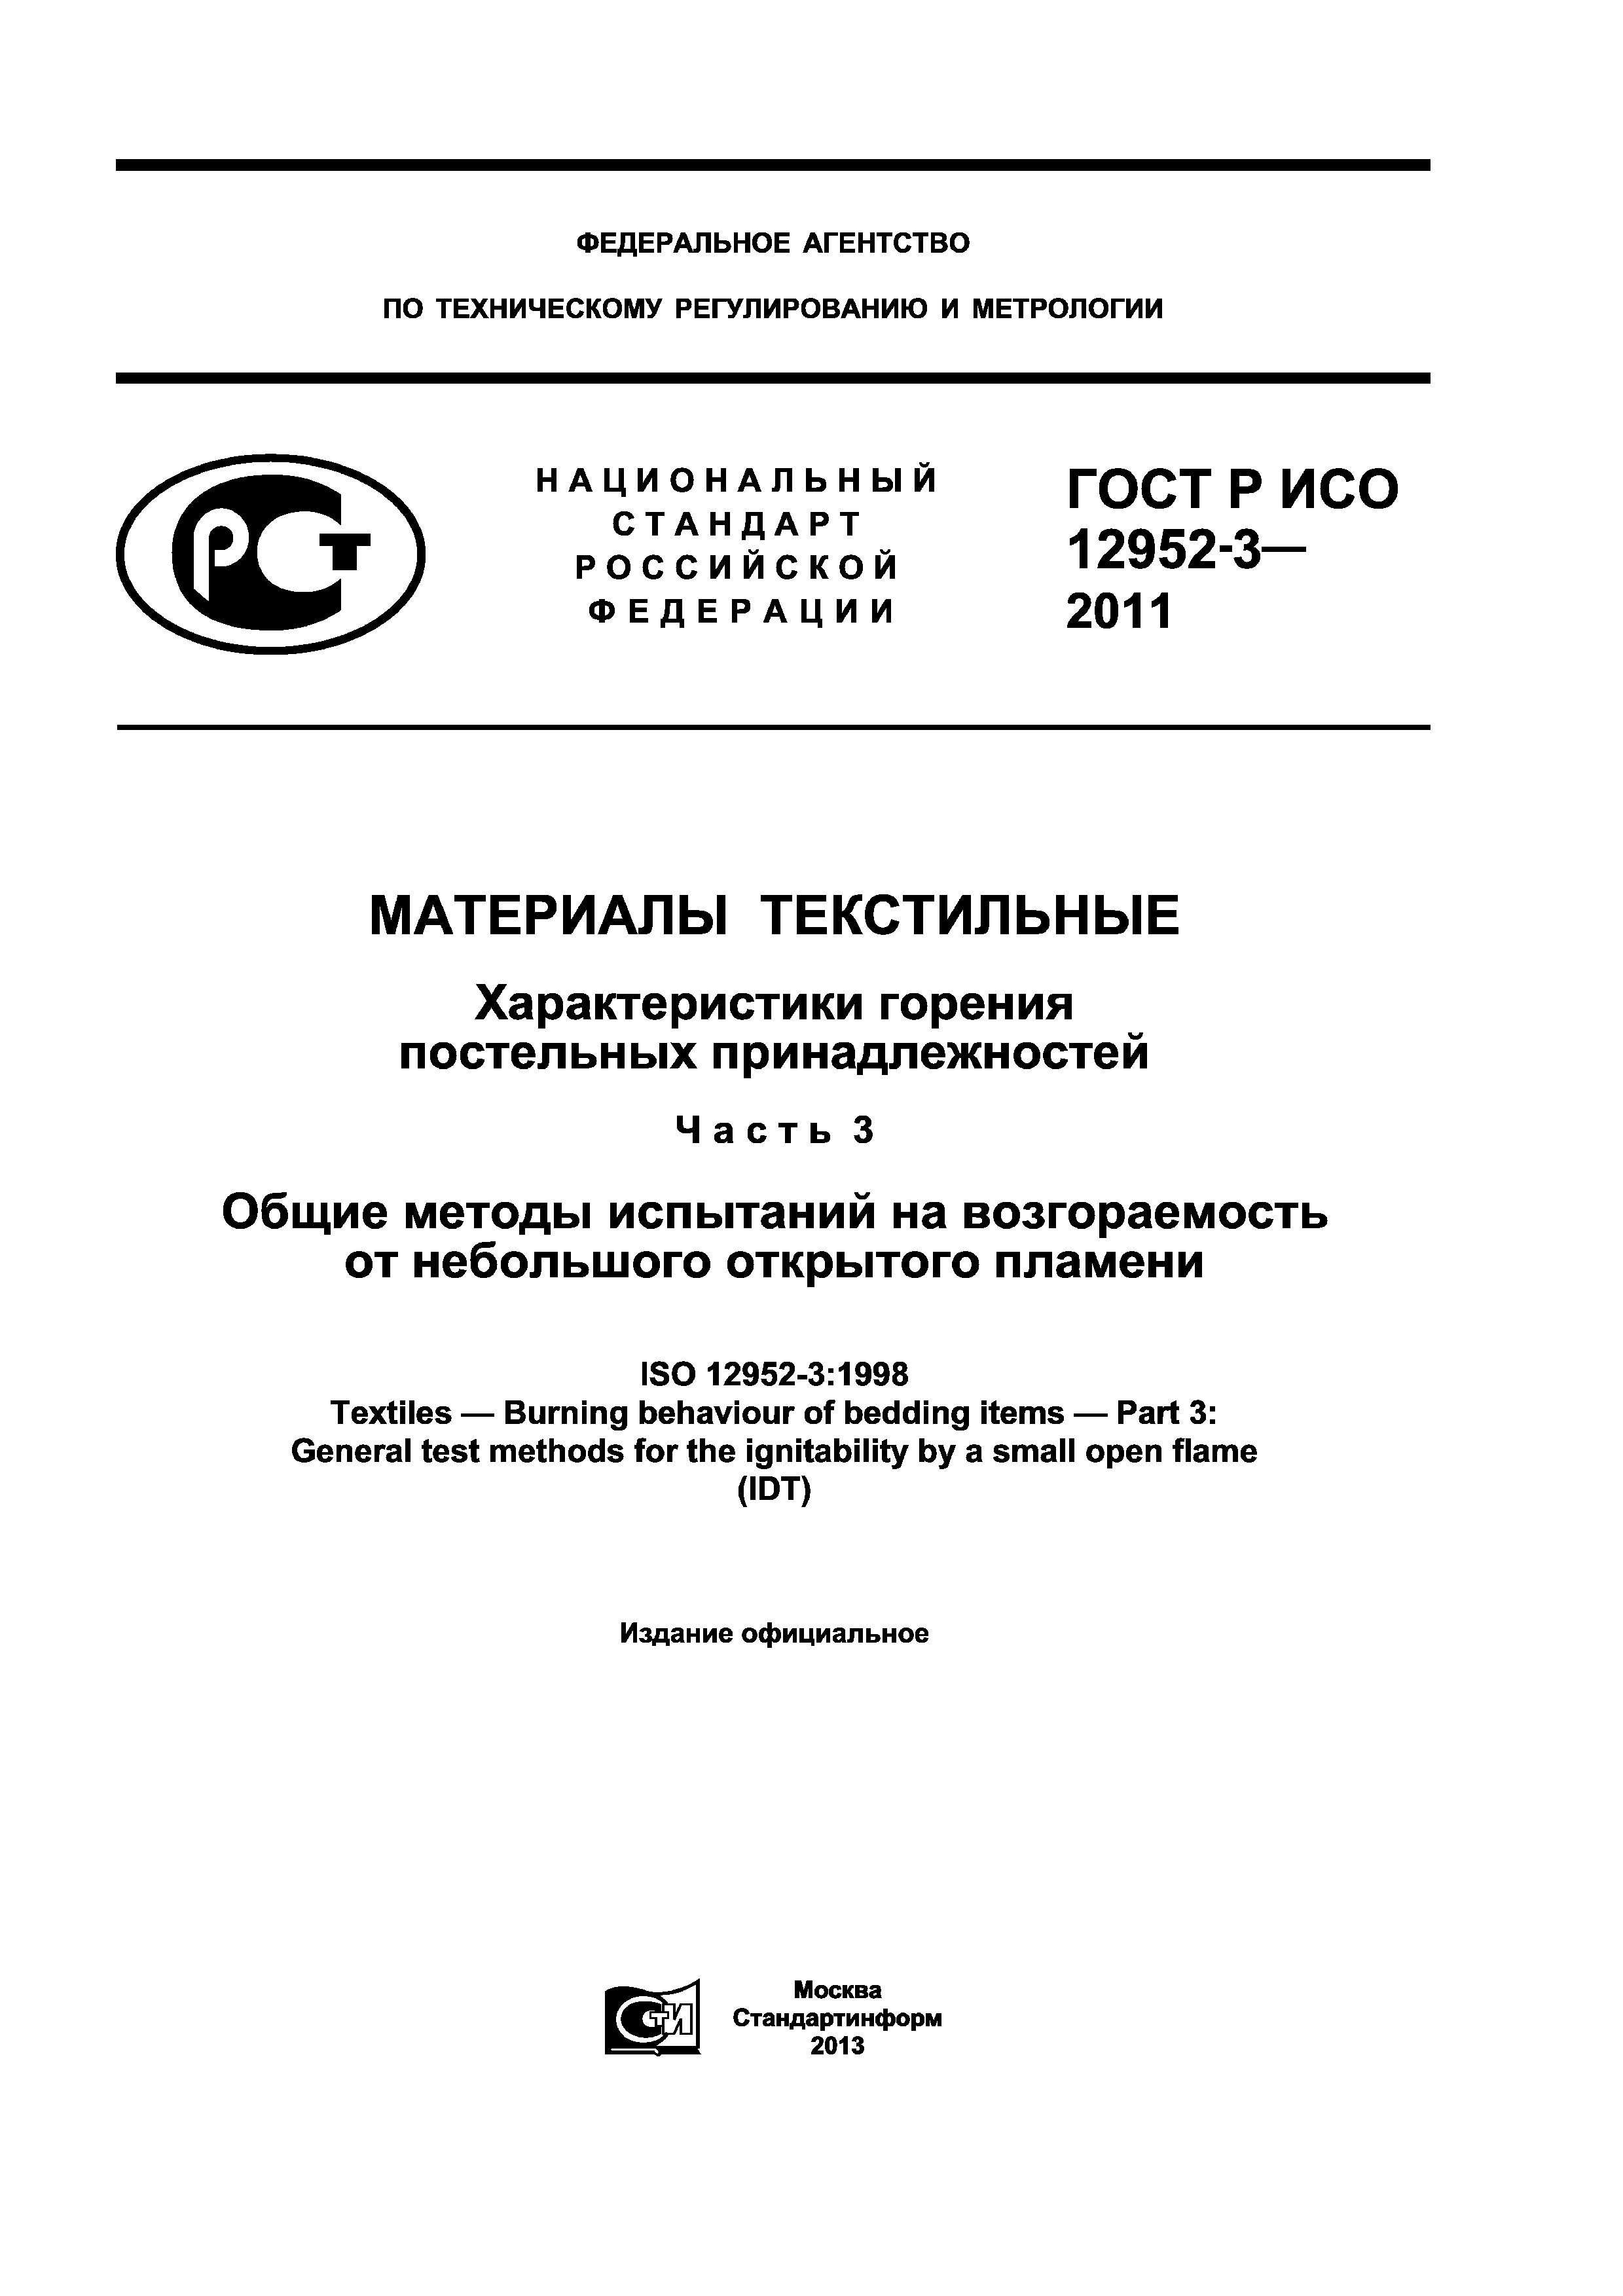 ГОСТ Р ИСО 12952-3-2011